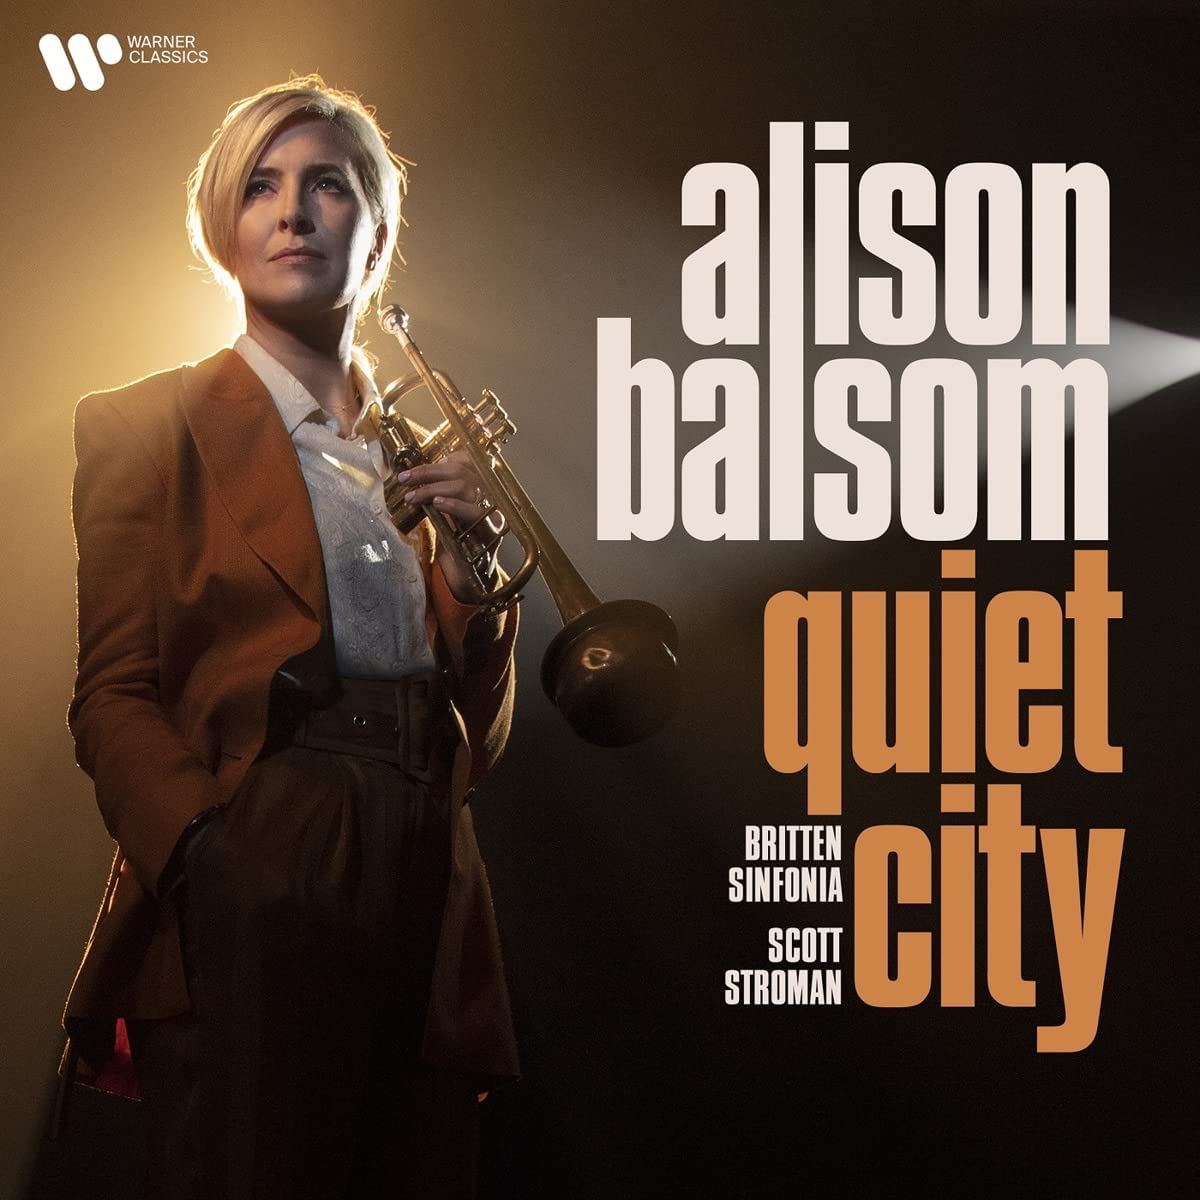 Alison Balsom Quiet City